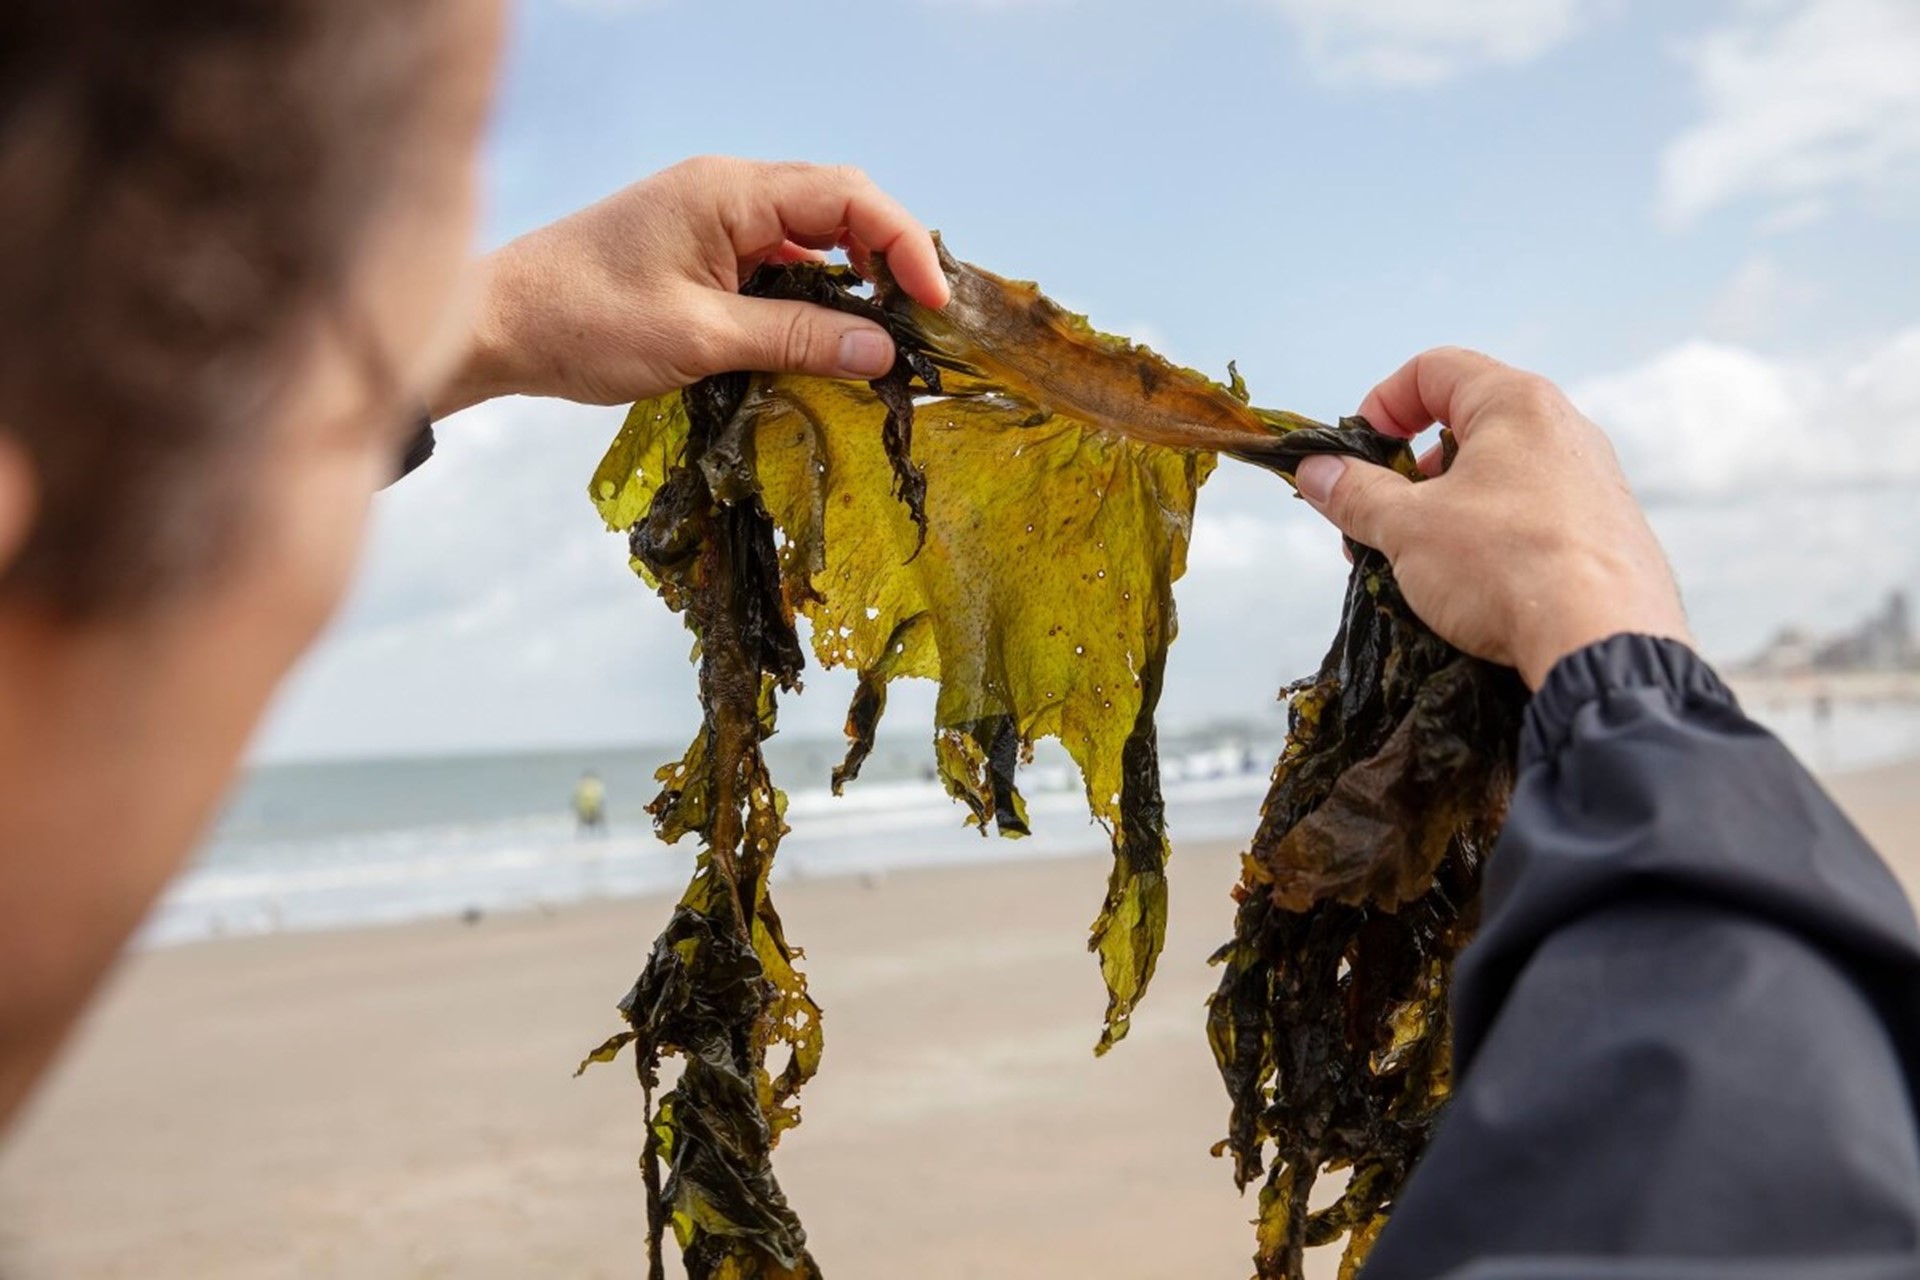 Klimaatondernemer Joost Wouters die op het strand een stuk zeewier van dichtbij bekijkt